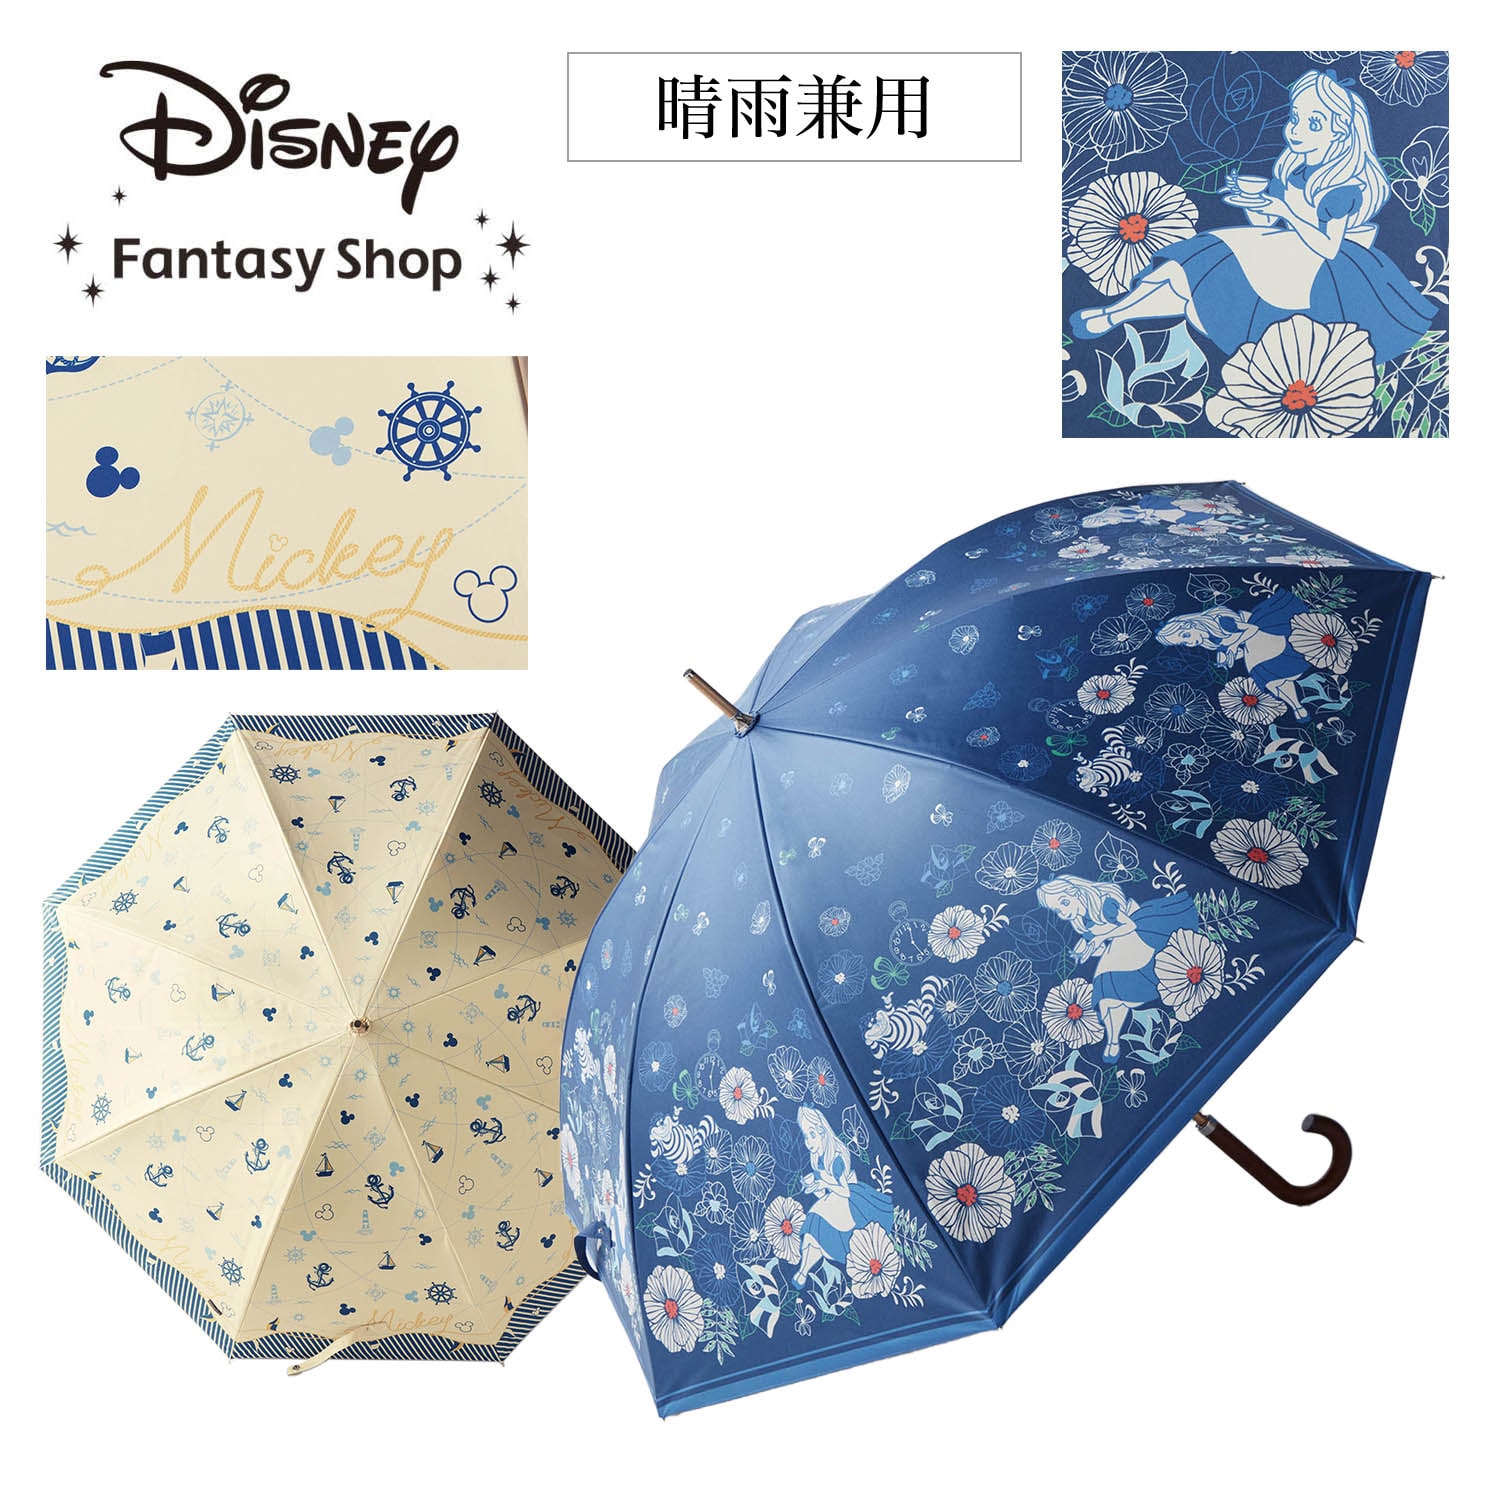 【ディズニー/Disney】大きめサイズの1級遮光晴雨兼用日傘(選べるキャラクター)